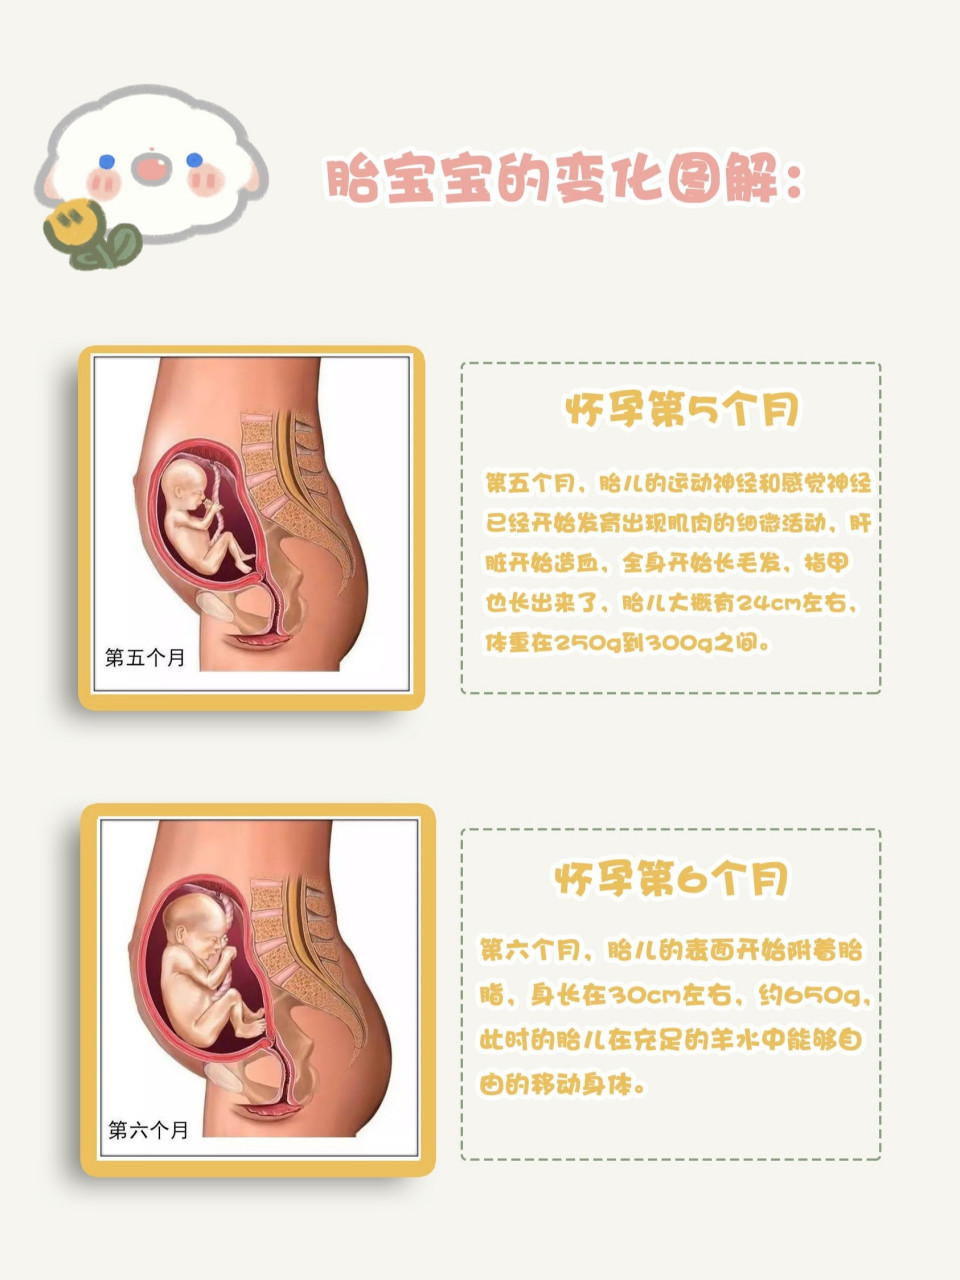 怀孕周期宝宝发育图图片